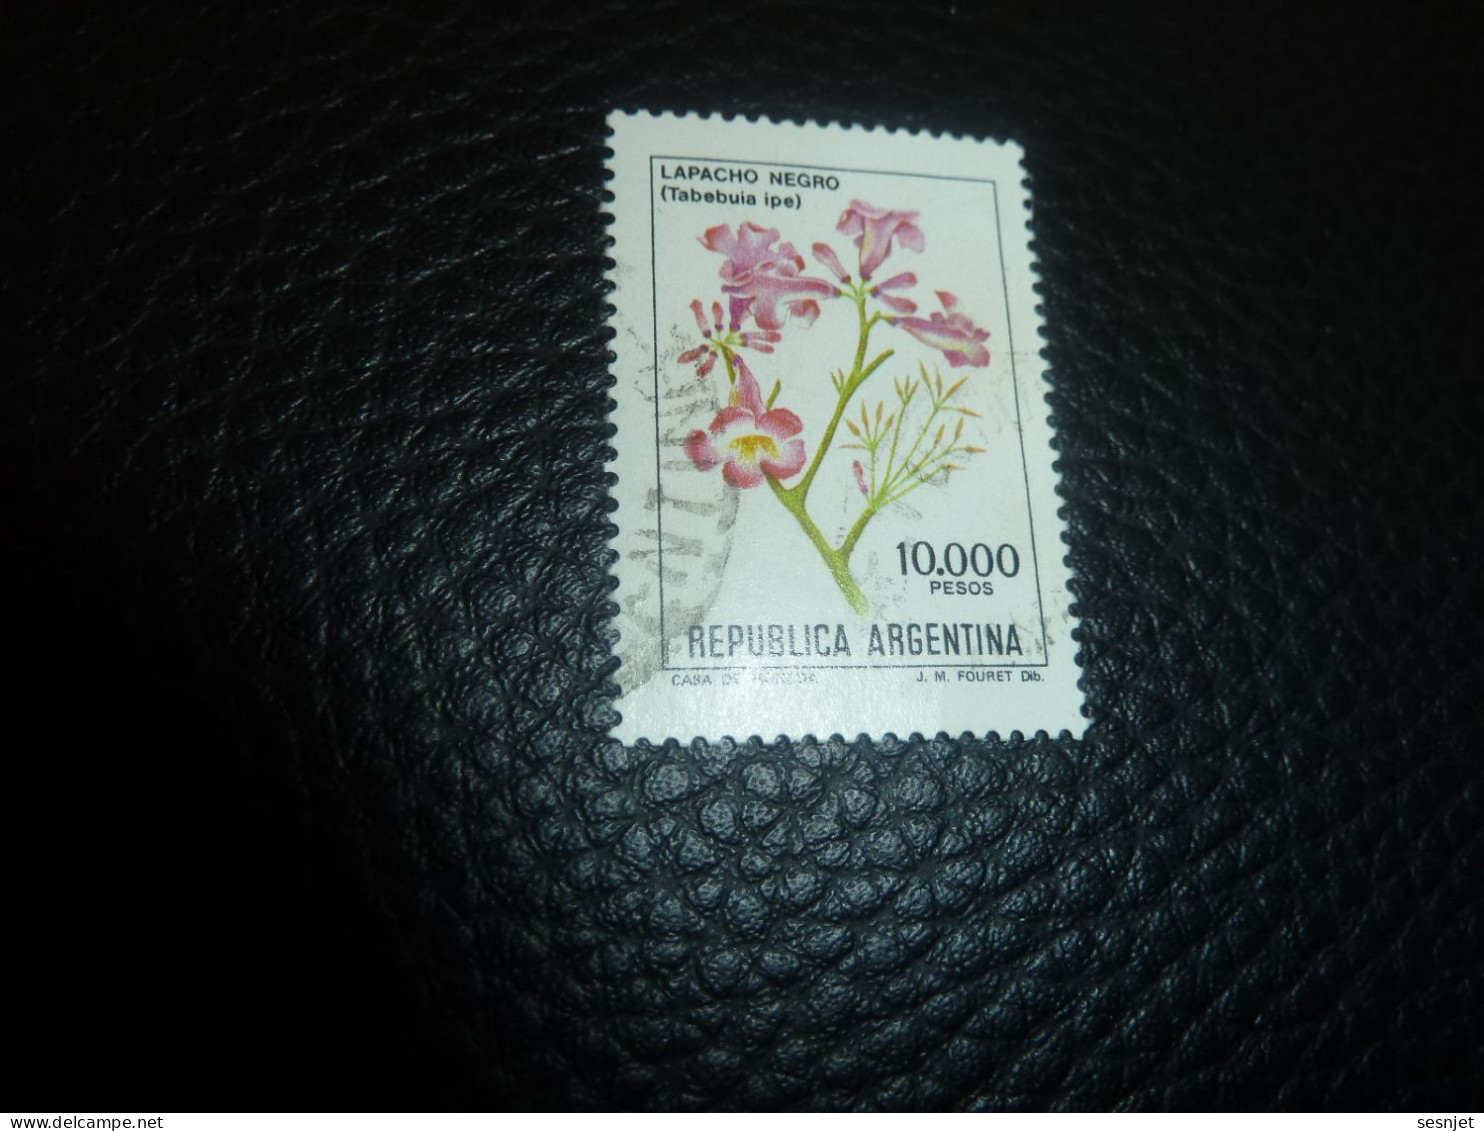 Républica Argentina - Lapacho Negro (Tabebuia Ipe) - 10.000 - Pesos - Yt 1293 - Multicolore - Oblitéré - Année 1982 - - Gebraucht